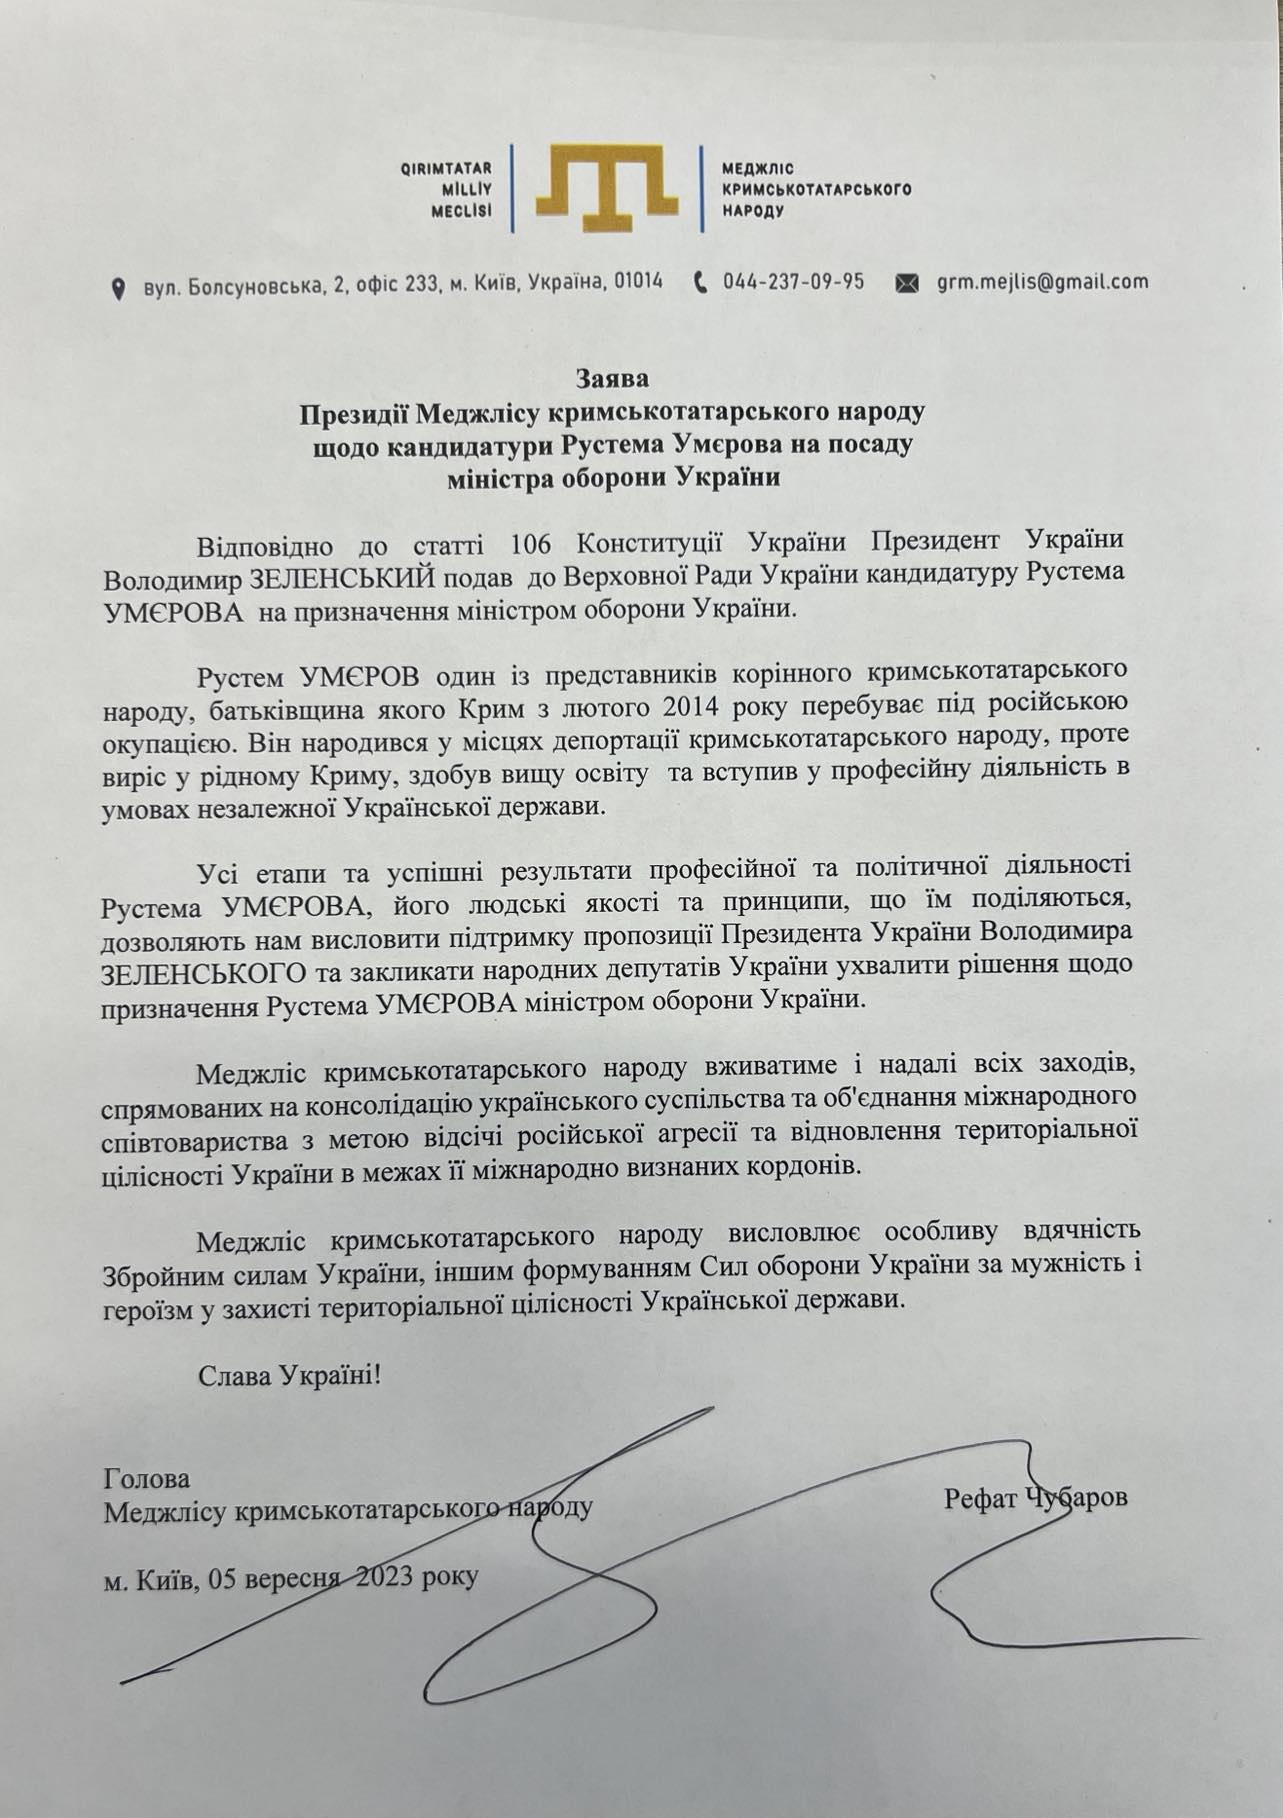 Заява щодо кандидатури Рустема Умєрова на посаду міністра оборони України